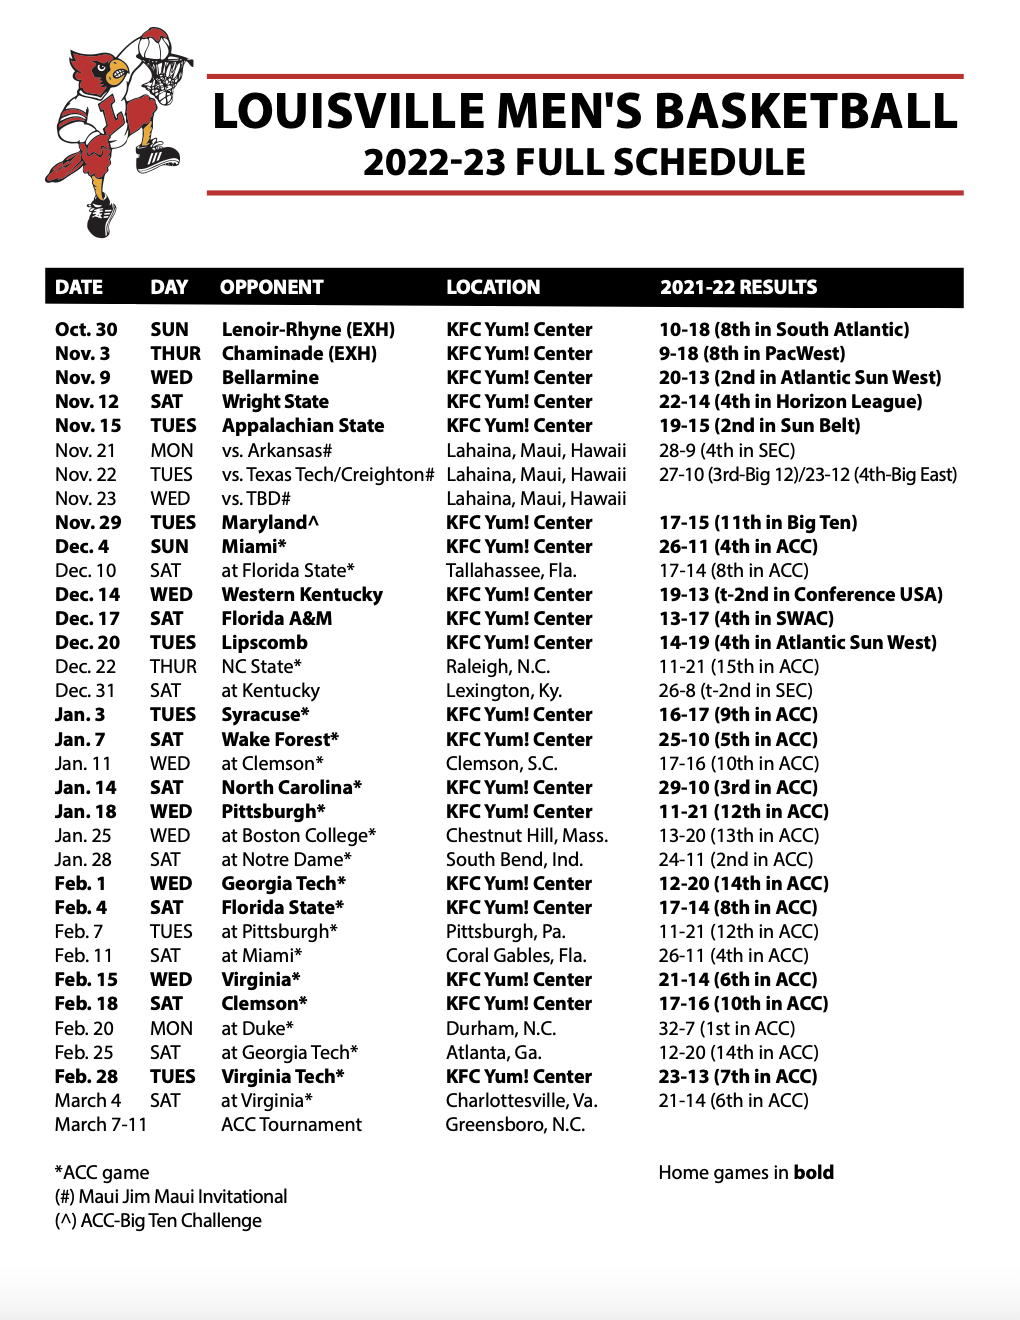 North Carolina vs. Louisville Men's Basketball Highlights (2021-22